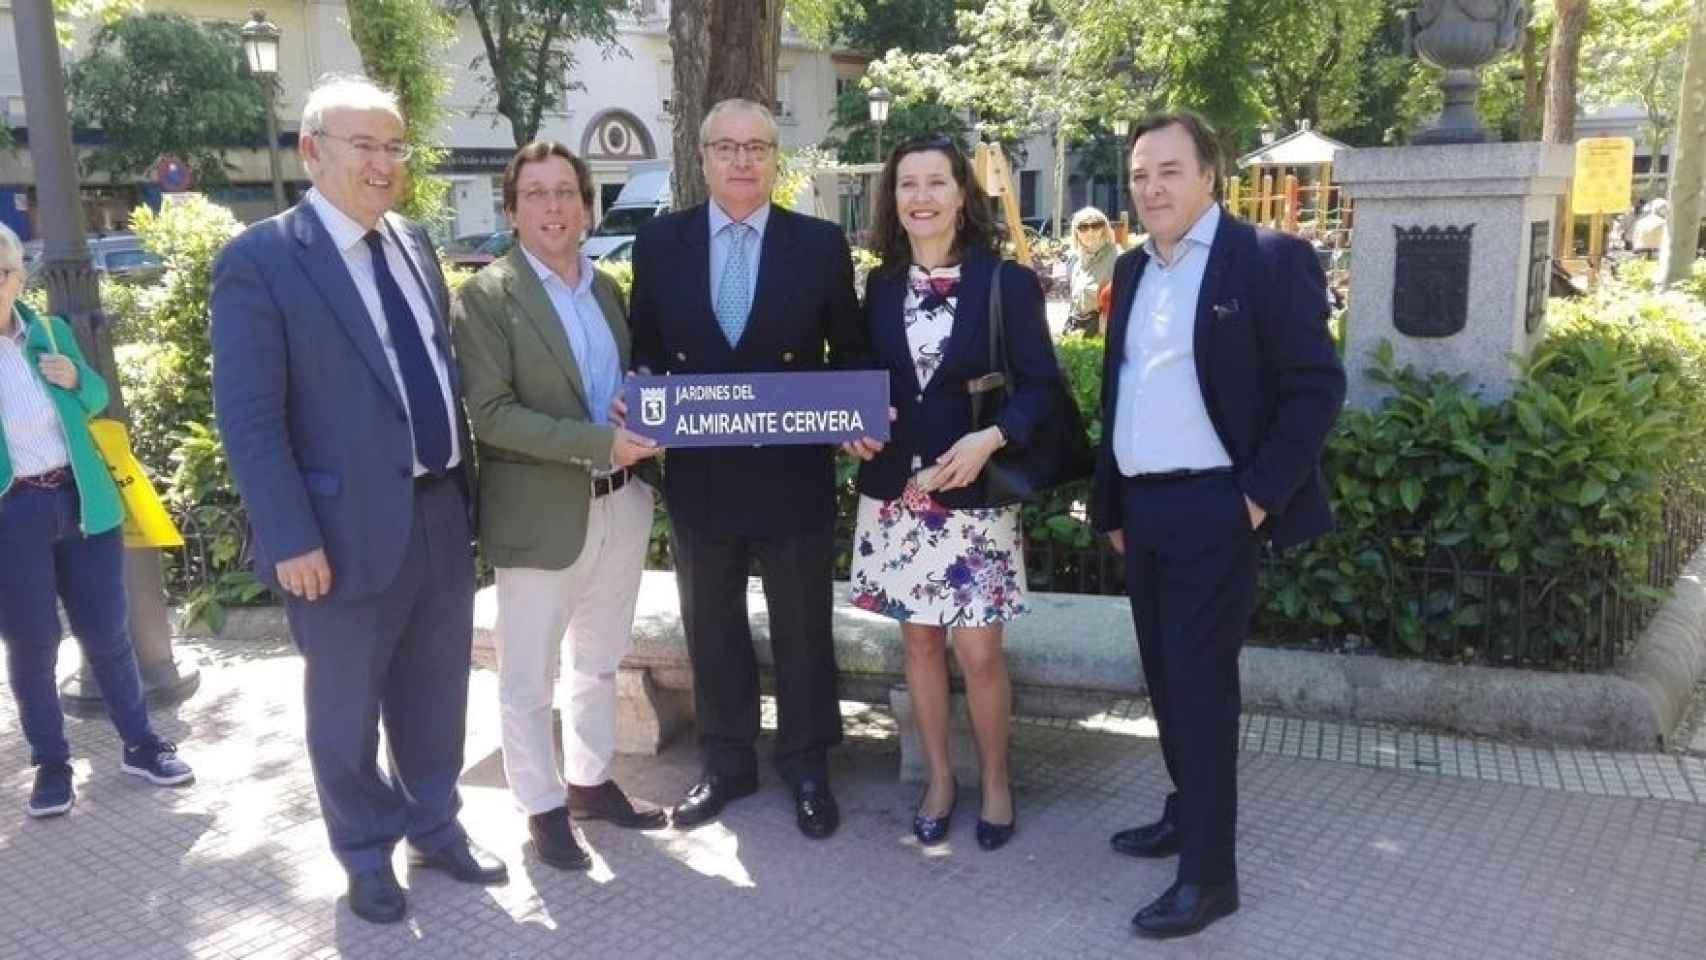 La Asociación Familia Cervera participa en la inauguración de los Jardines de Madrid en honor al Almirante (2018). Quien sujeta la placa es Pascual Cervera de la Chica, presidente de la entidad.